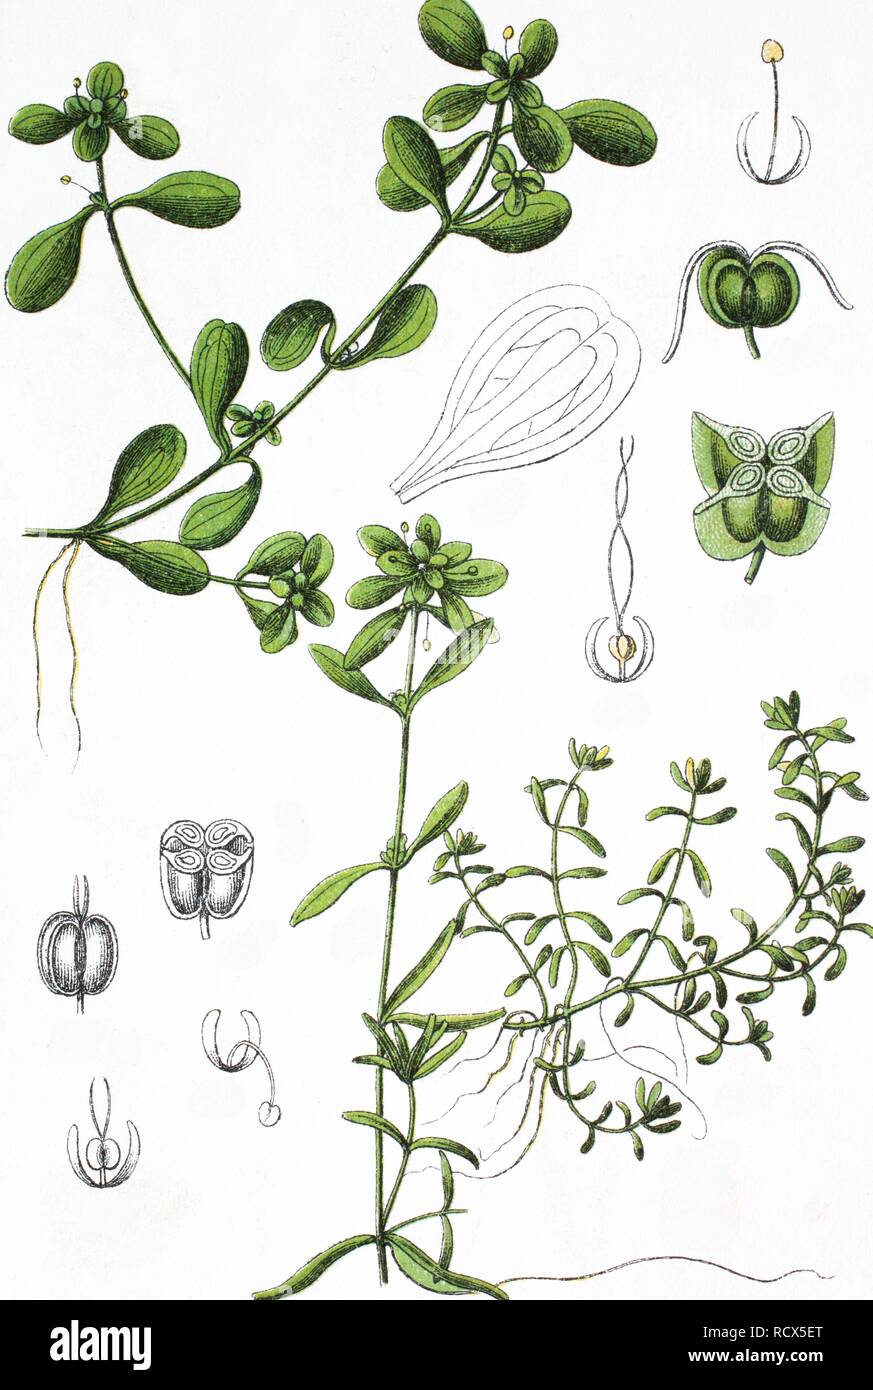 Pond Water Starwort (Callitriche stagnalis), left, and Water Starwort hybrids (Callitriche x minima), right Stock Photo